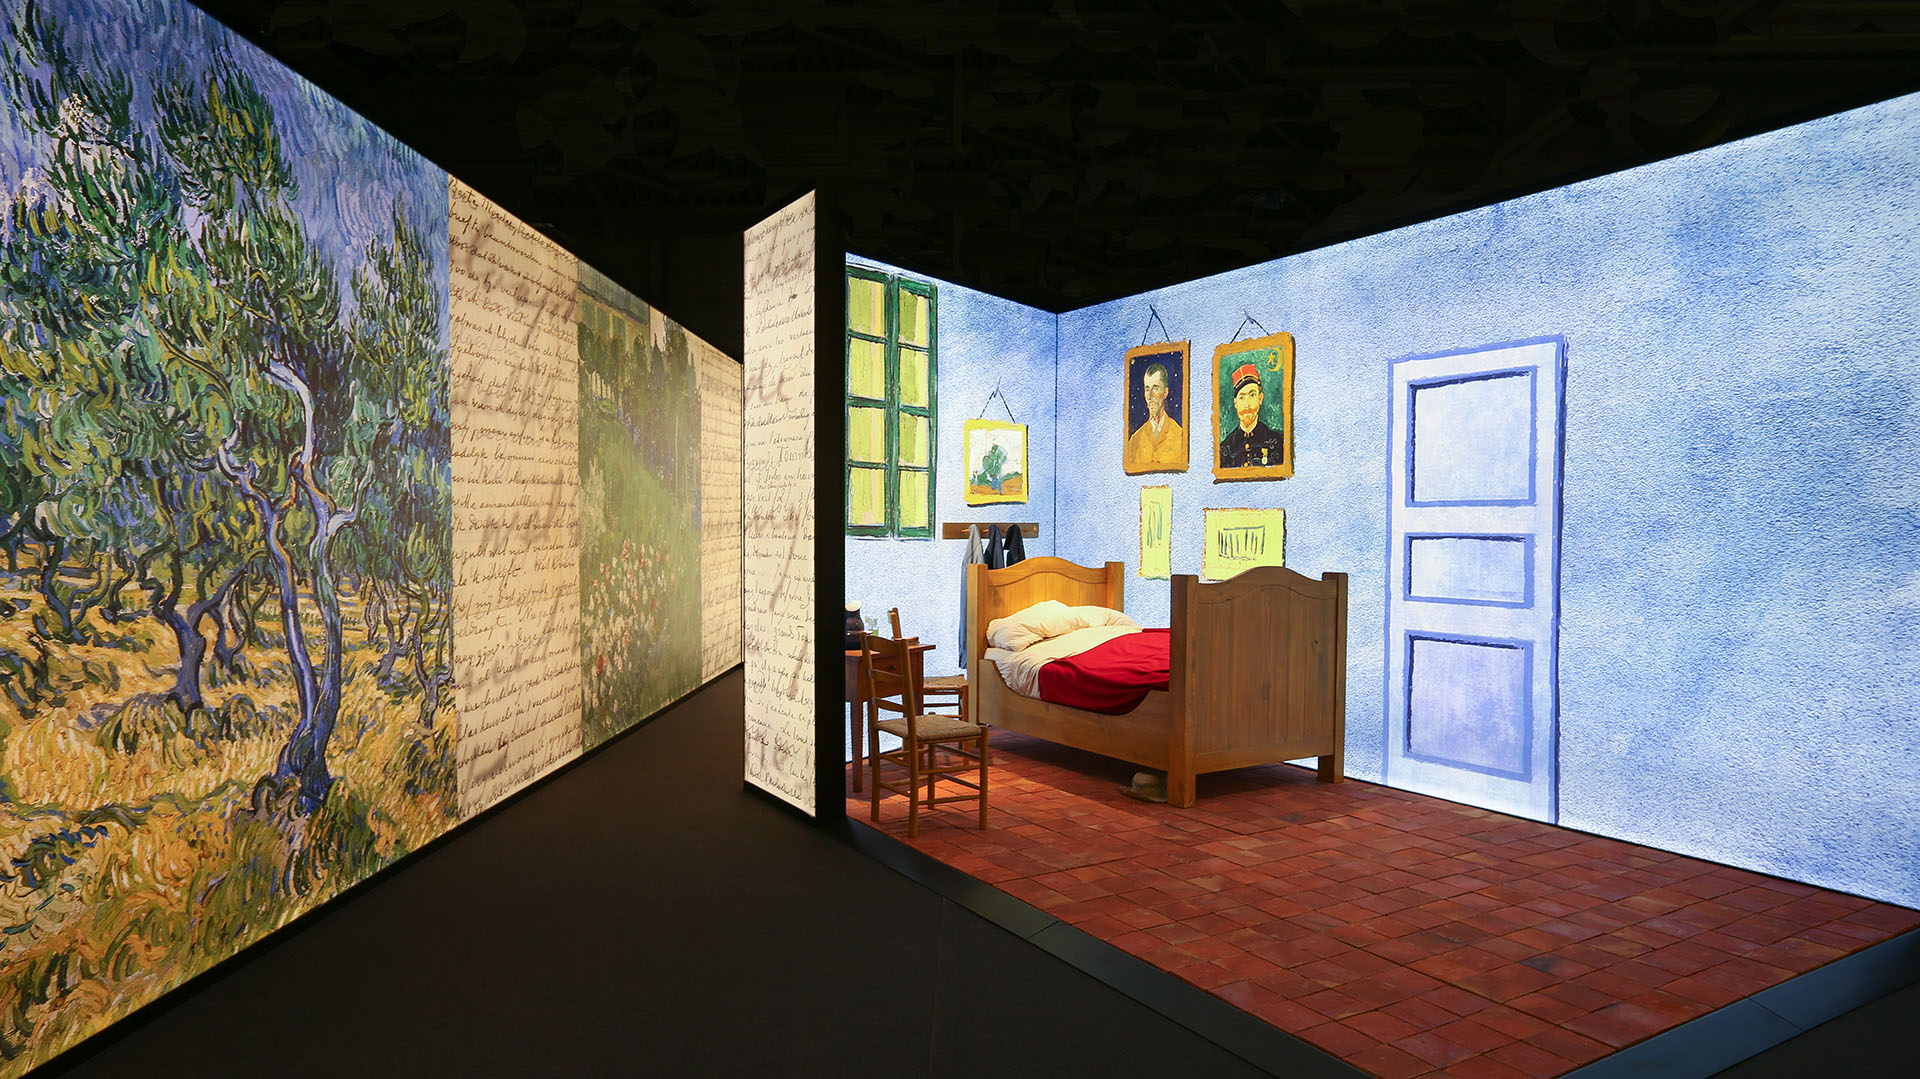 Todos los visitantes de Meet Vincent Van Gogh reciben una audioguía gratuita, narrada por Vincent y las personas más cercanas a él